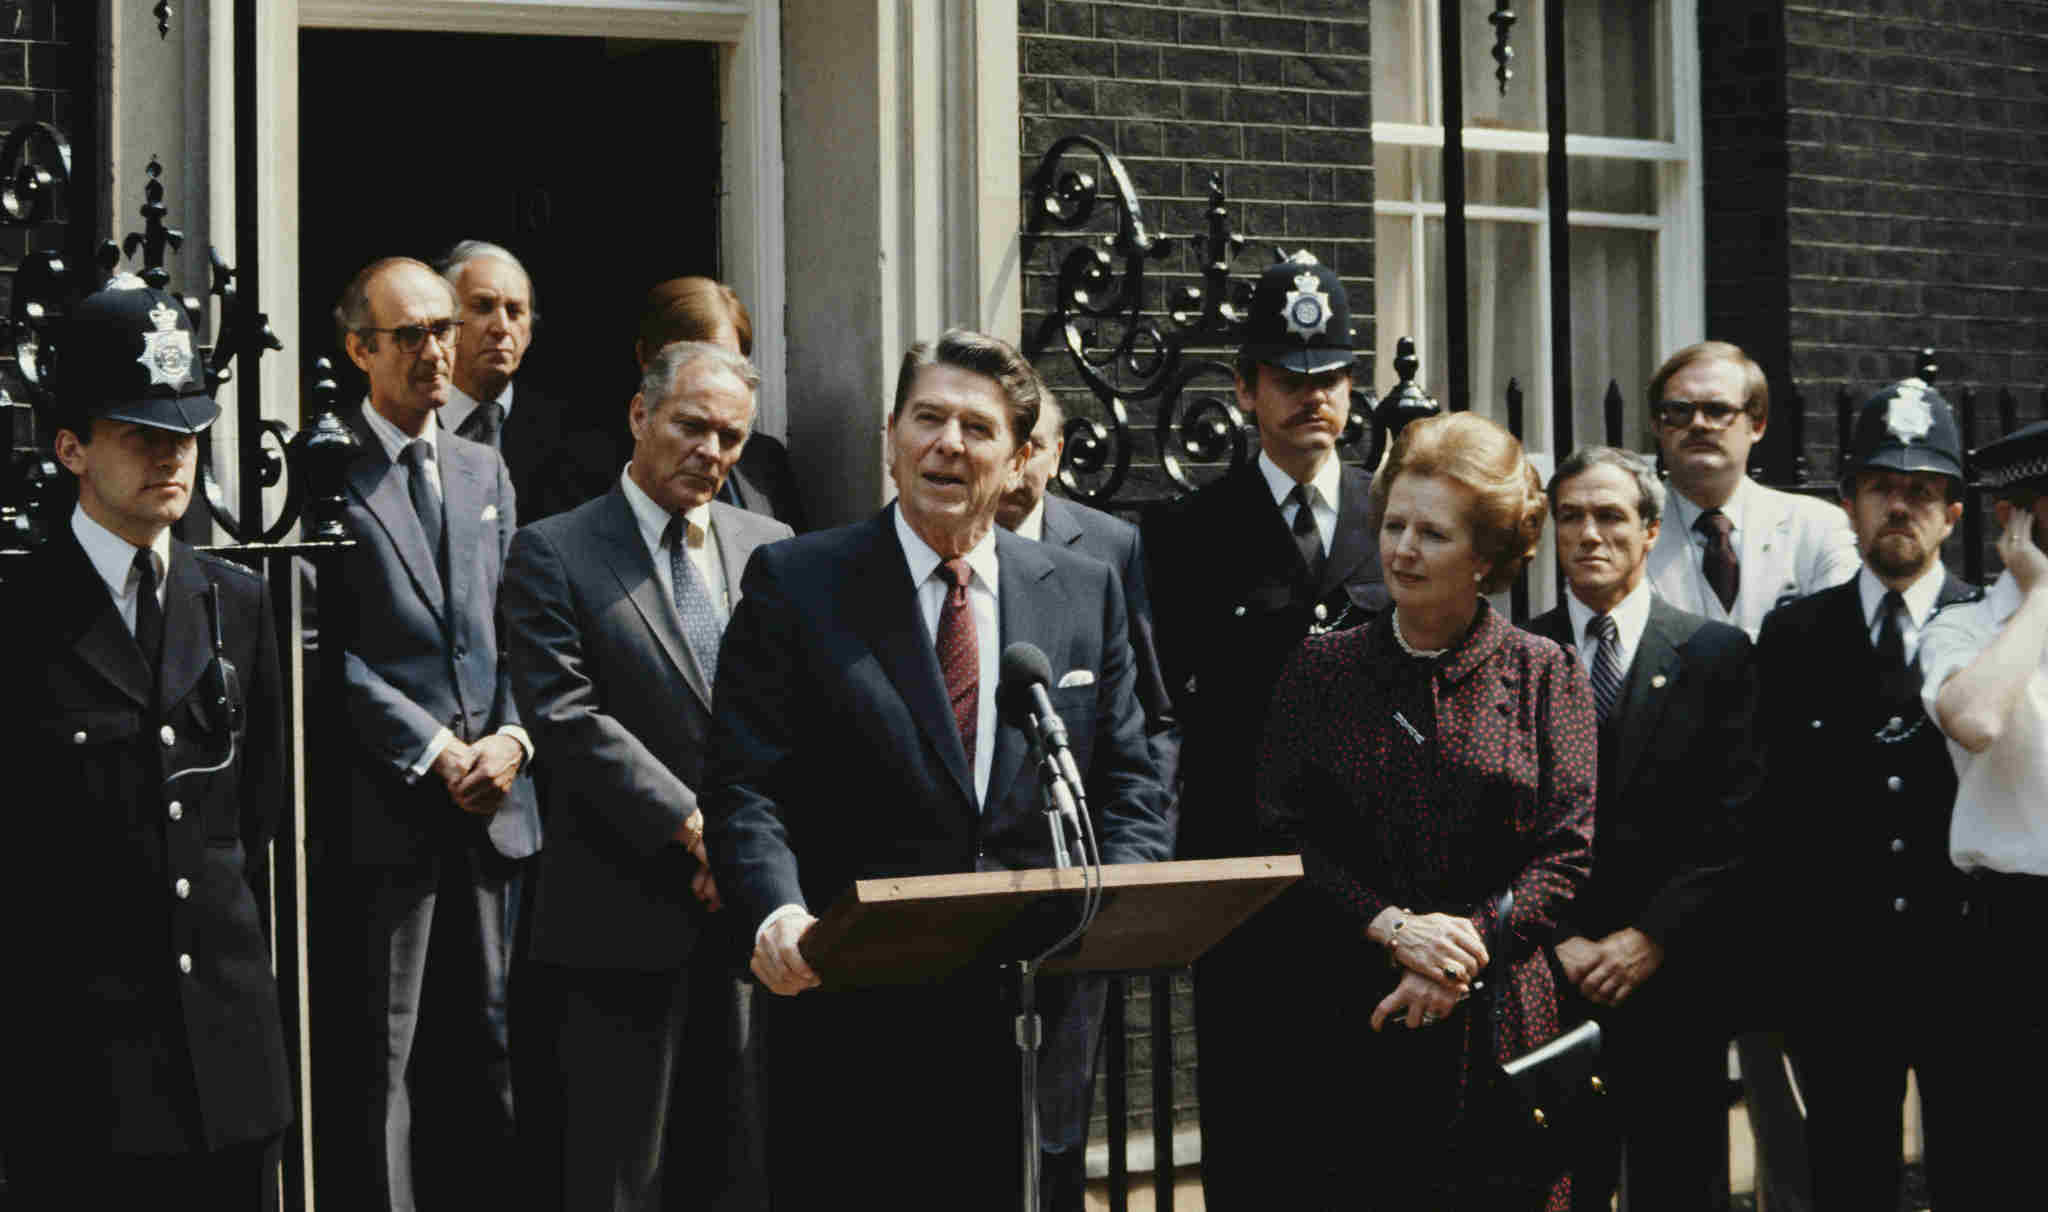 El presidente estadounidense Ronald Reagan pronuncia un discurso ante el número 10 de Downing Street, el 9 de junio de 1982. Durante esta visita, Reagan esbozó su visión de la Dotación Nacional para la Democracia. (Foto: Fox Photos/Hulton Archive/Getty Images)